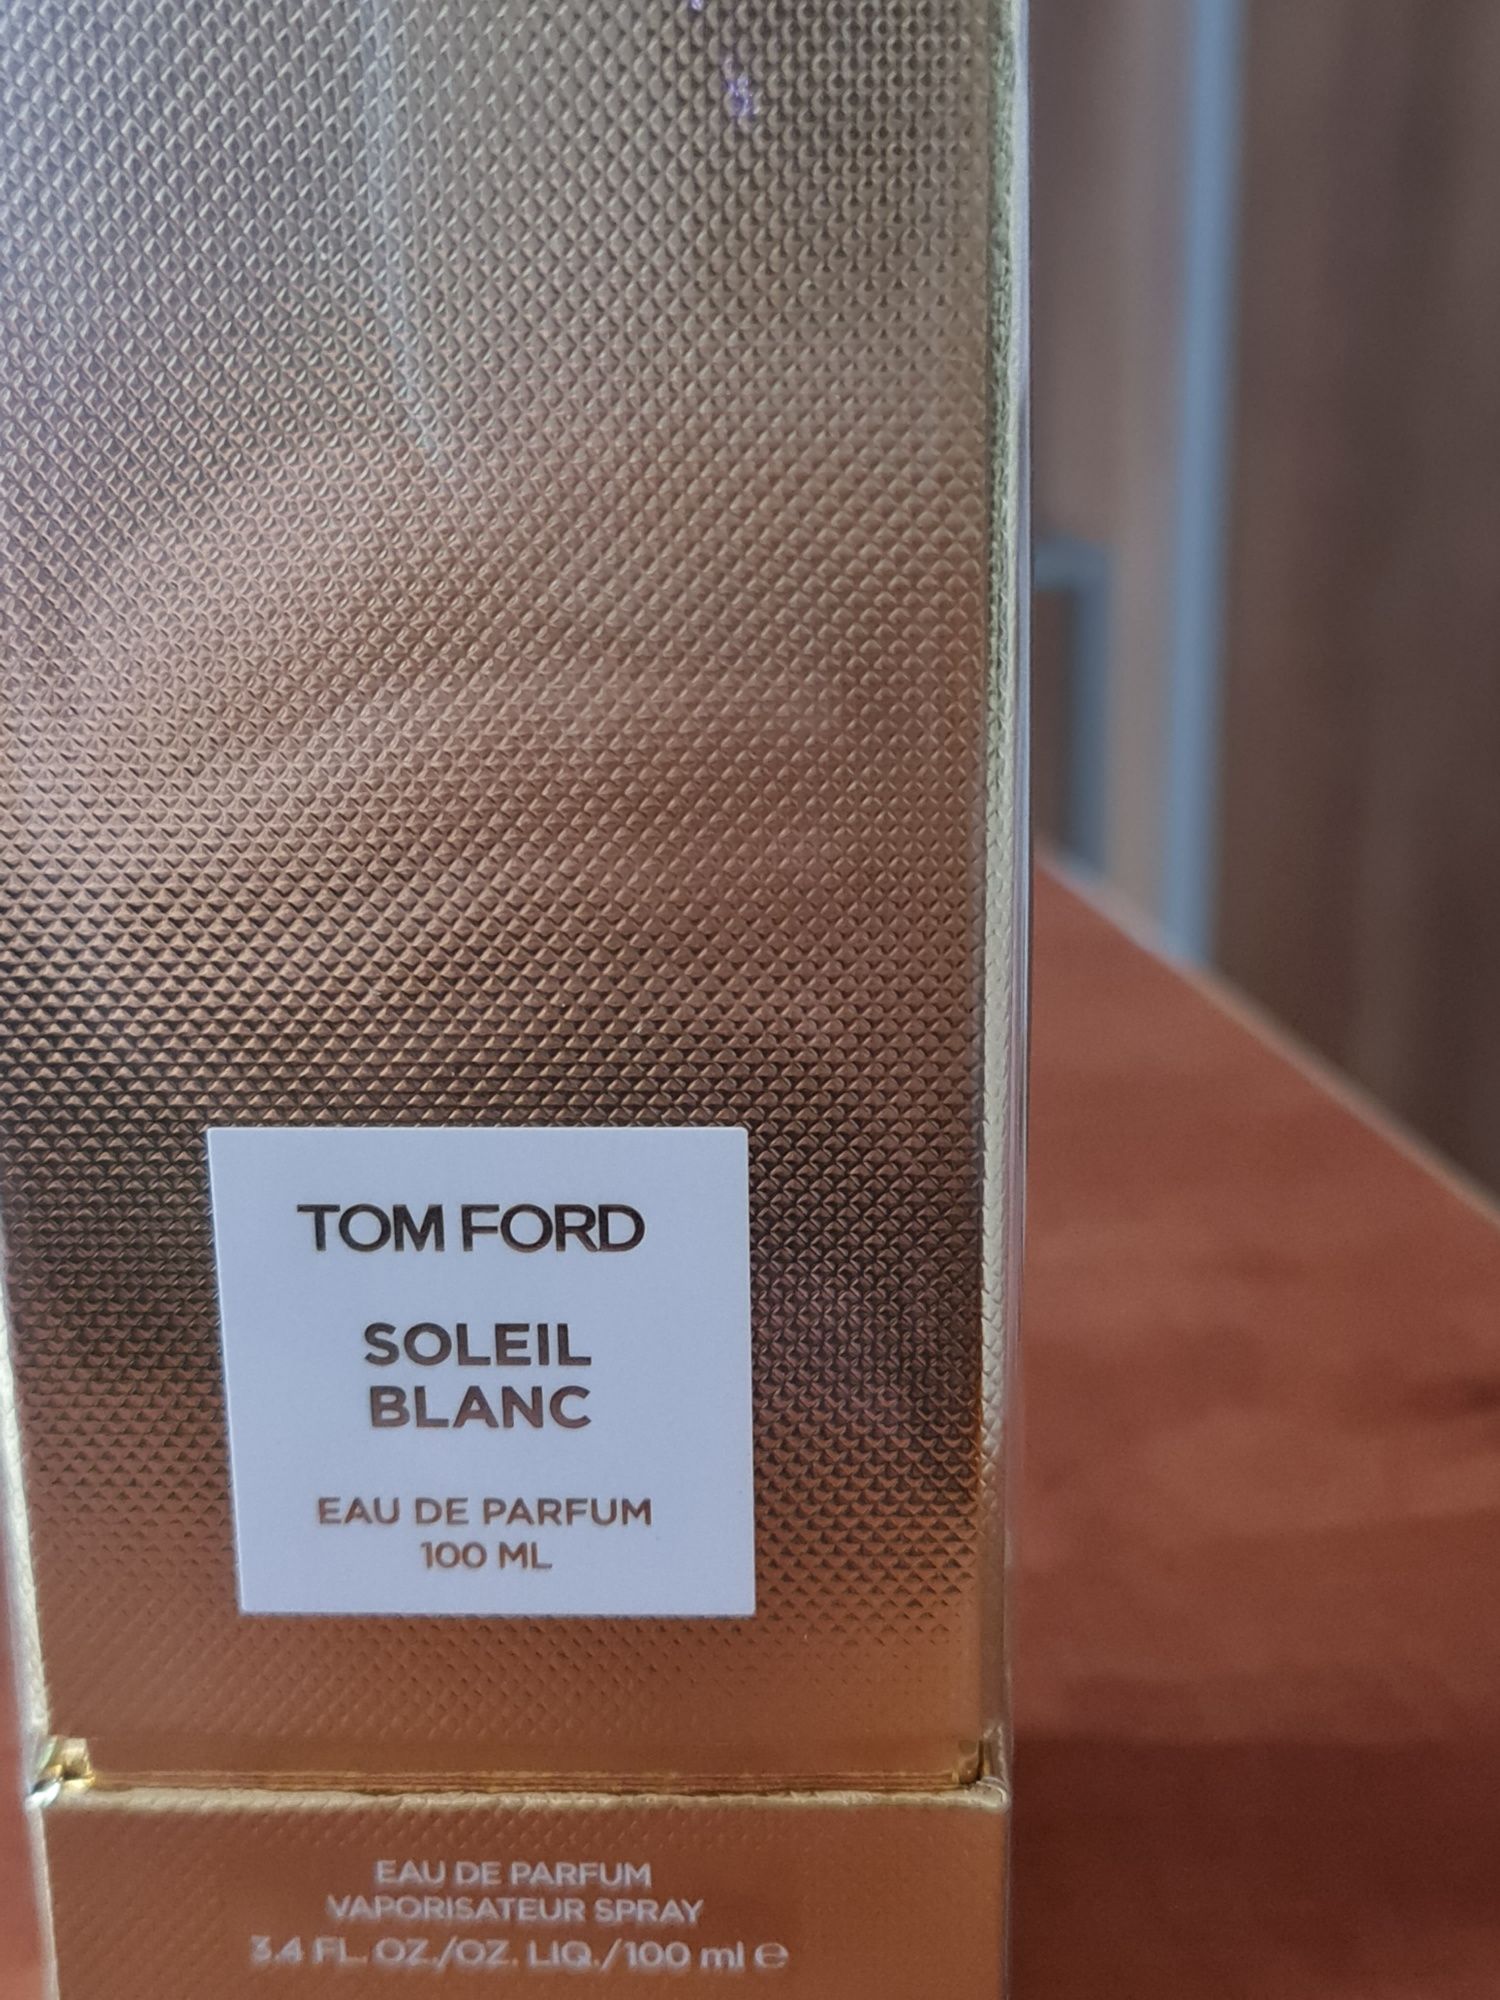 Tom ford soleil blanc